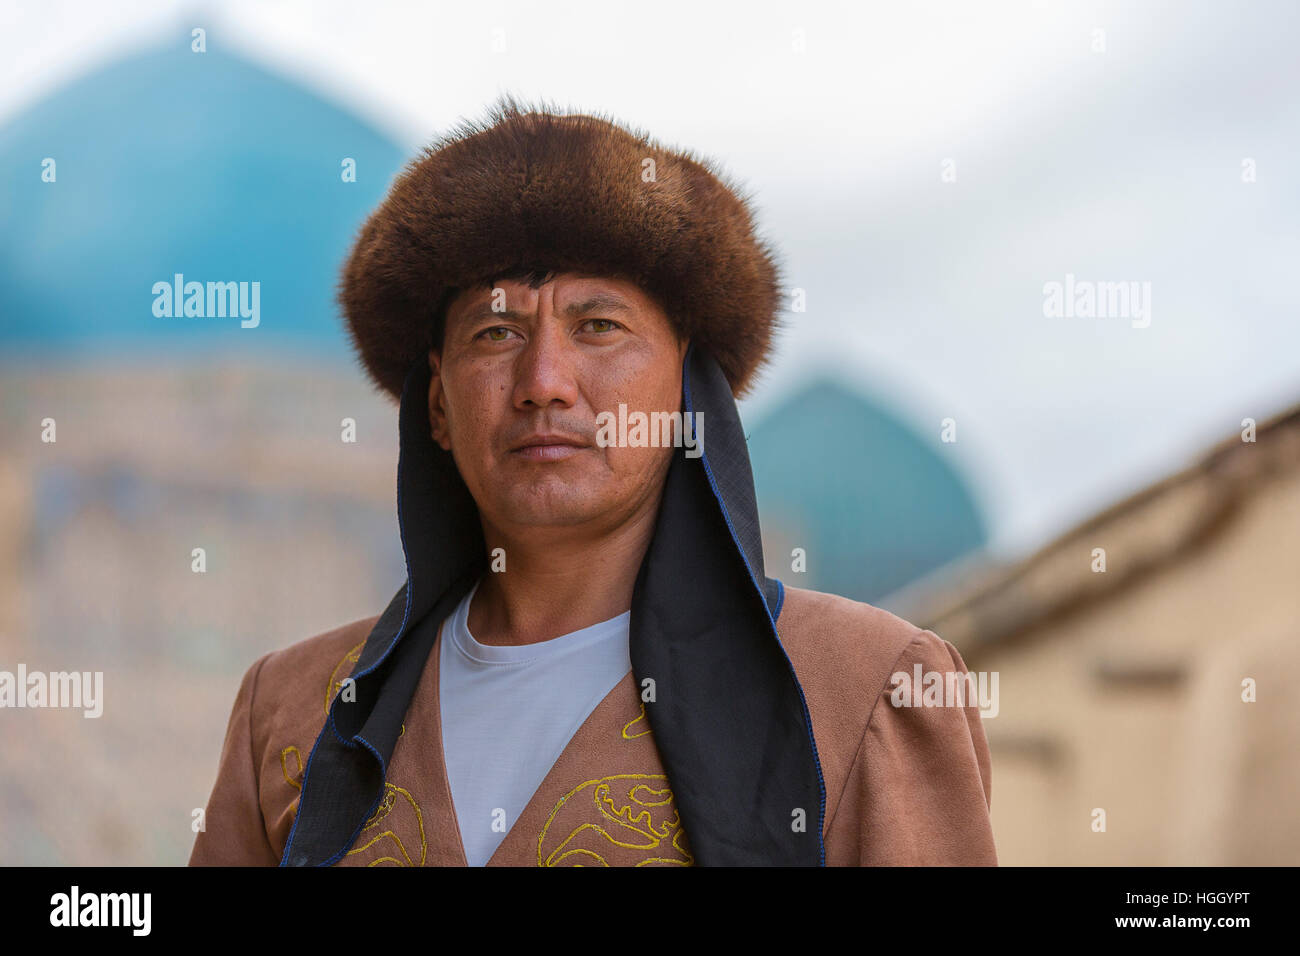 Homme kazakh en costume national avec les coupoles bleues de la mausolée de Khoja Ahmad Yasawi dans l'arrière-plan, Turkestan, Kazakhstan Banque D'Images